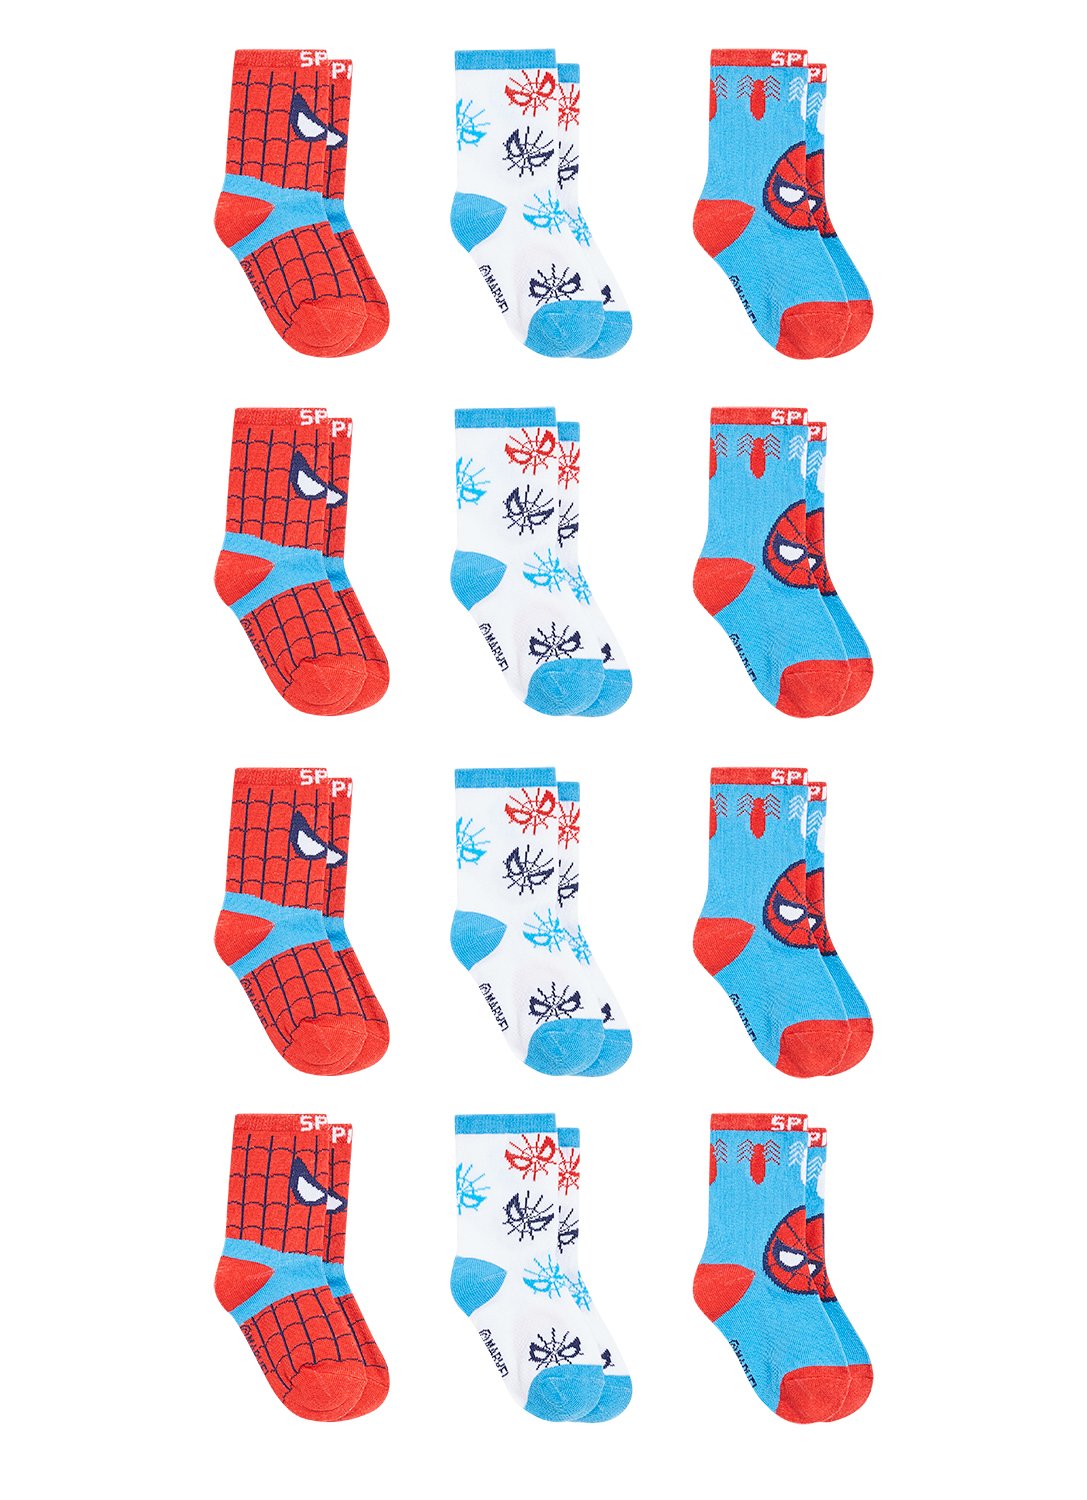 Boy 12 socks with Spider-Man motifs